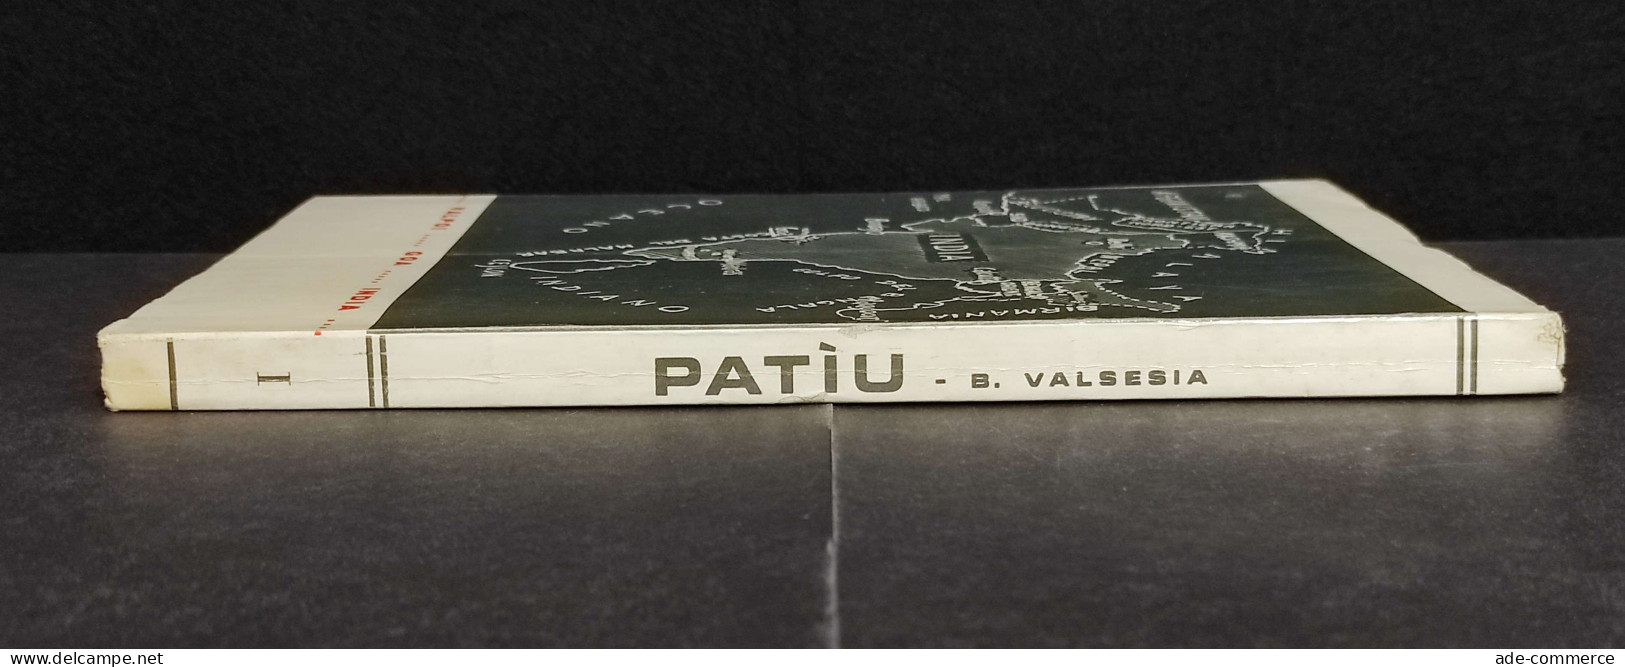 Patìu - Nella Giungla Del Satarì - B. Valsesia - 1967 - Tourisme, Voyages